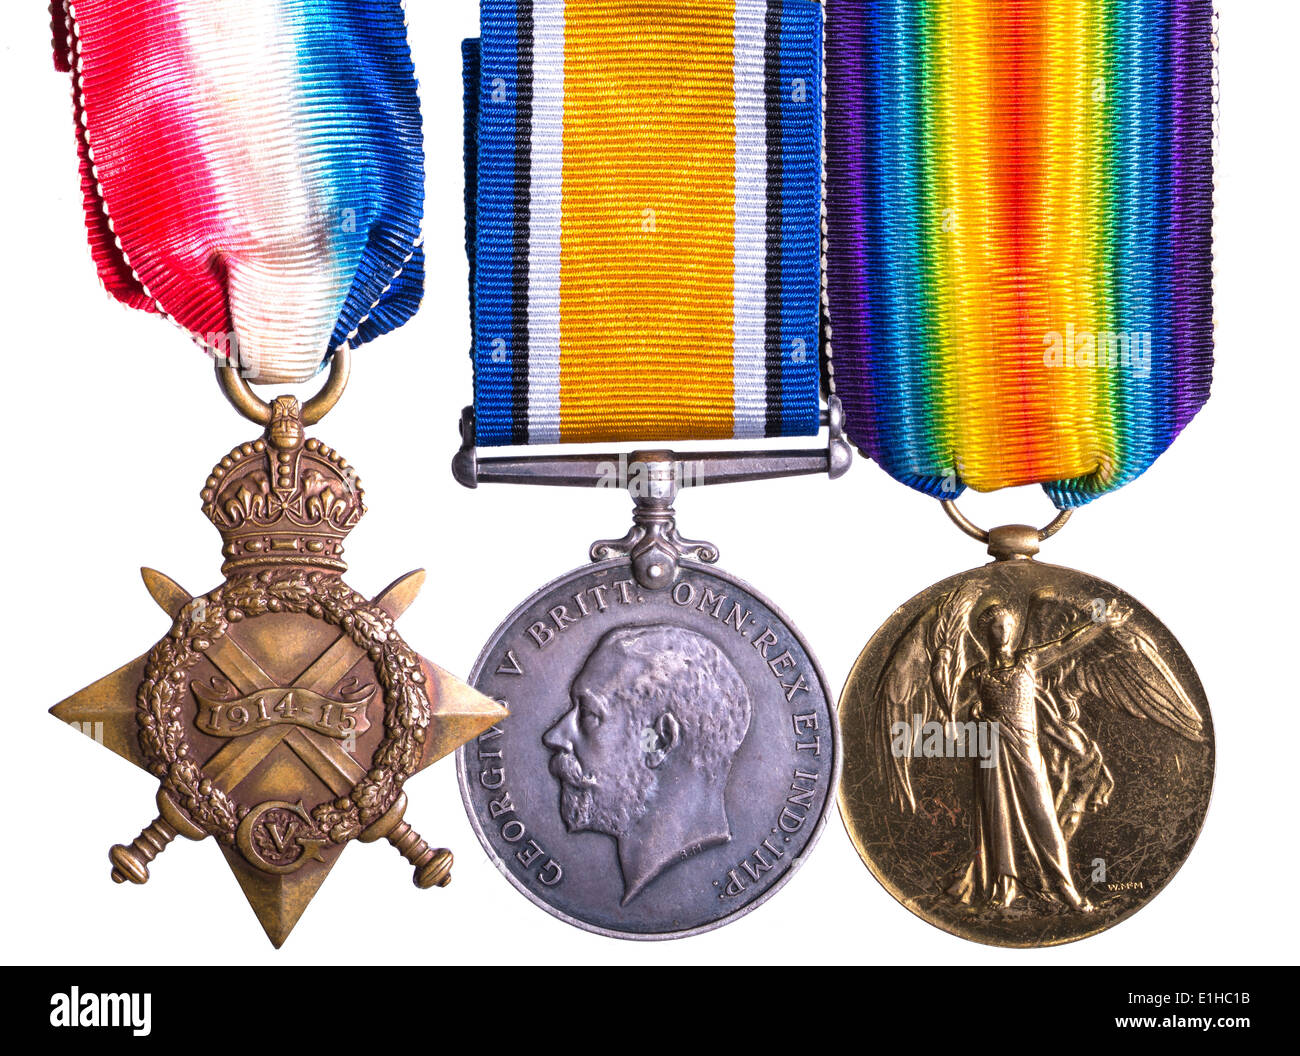 La première médaille de campagne connu comme Sqeak Pip et Wilfred - Étoile de 1914-1915, la Médaille de guerre britannique et la Médaille de la victoire des Alliés Banque D'Images